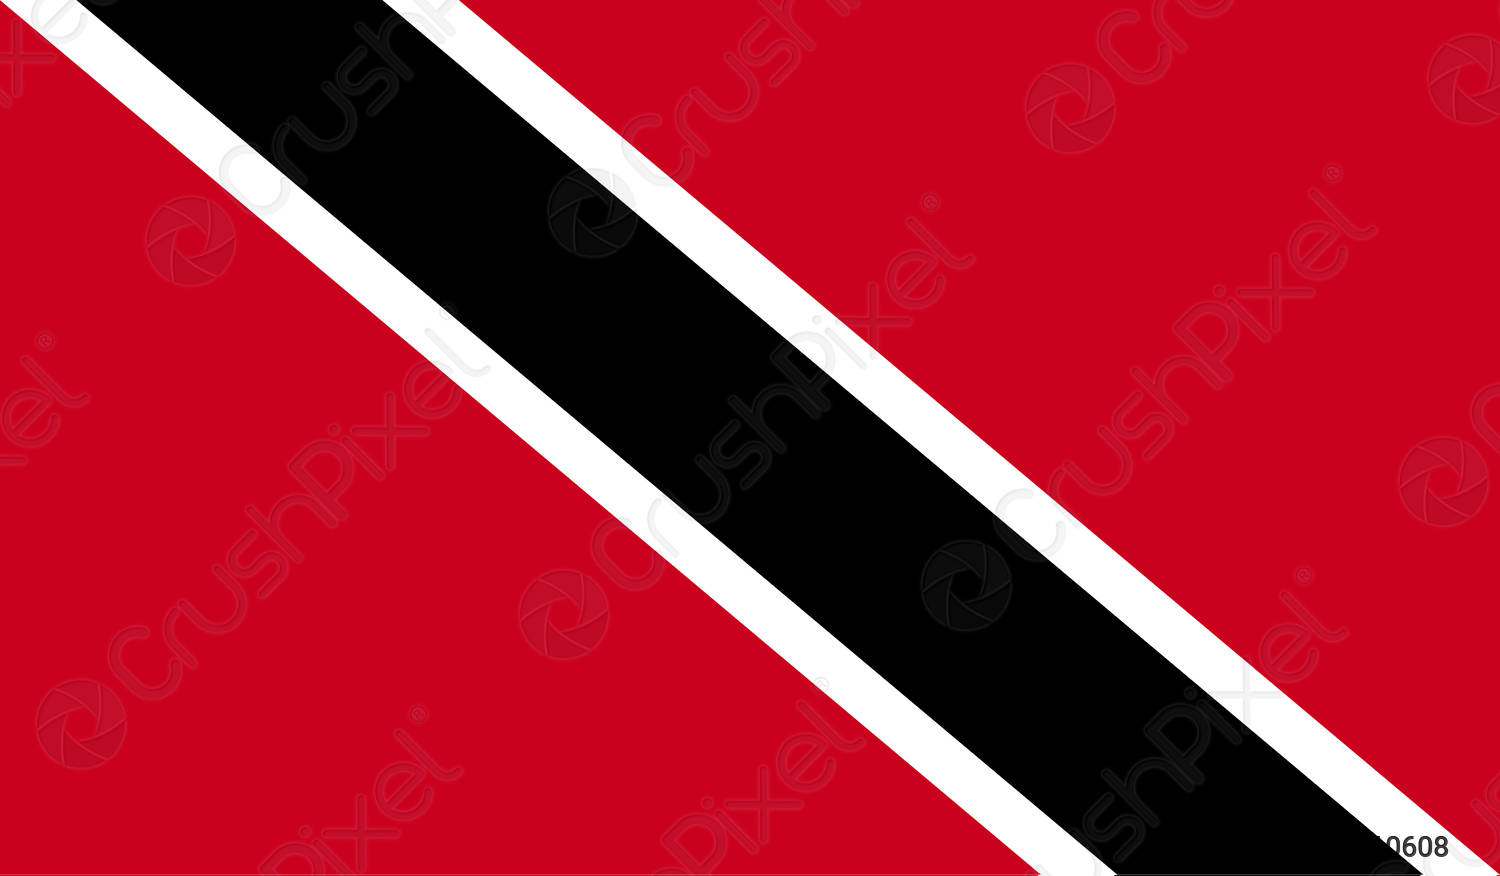 trinidad-tobago-flag-image-3210608.jpg